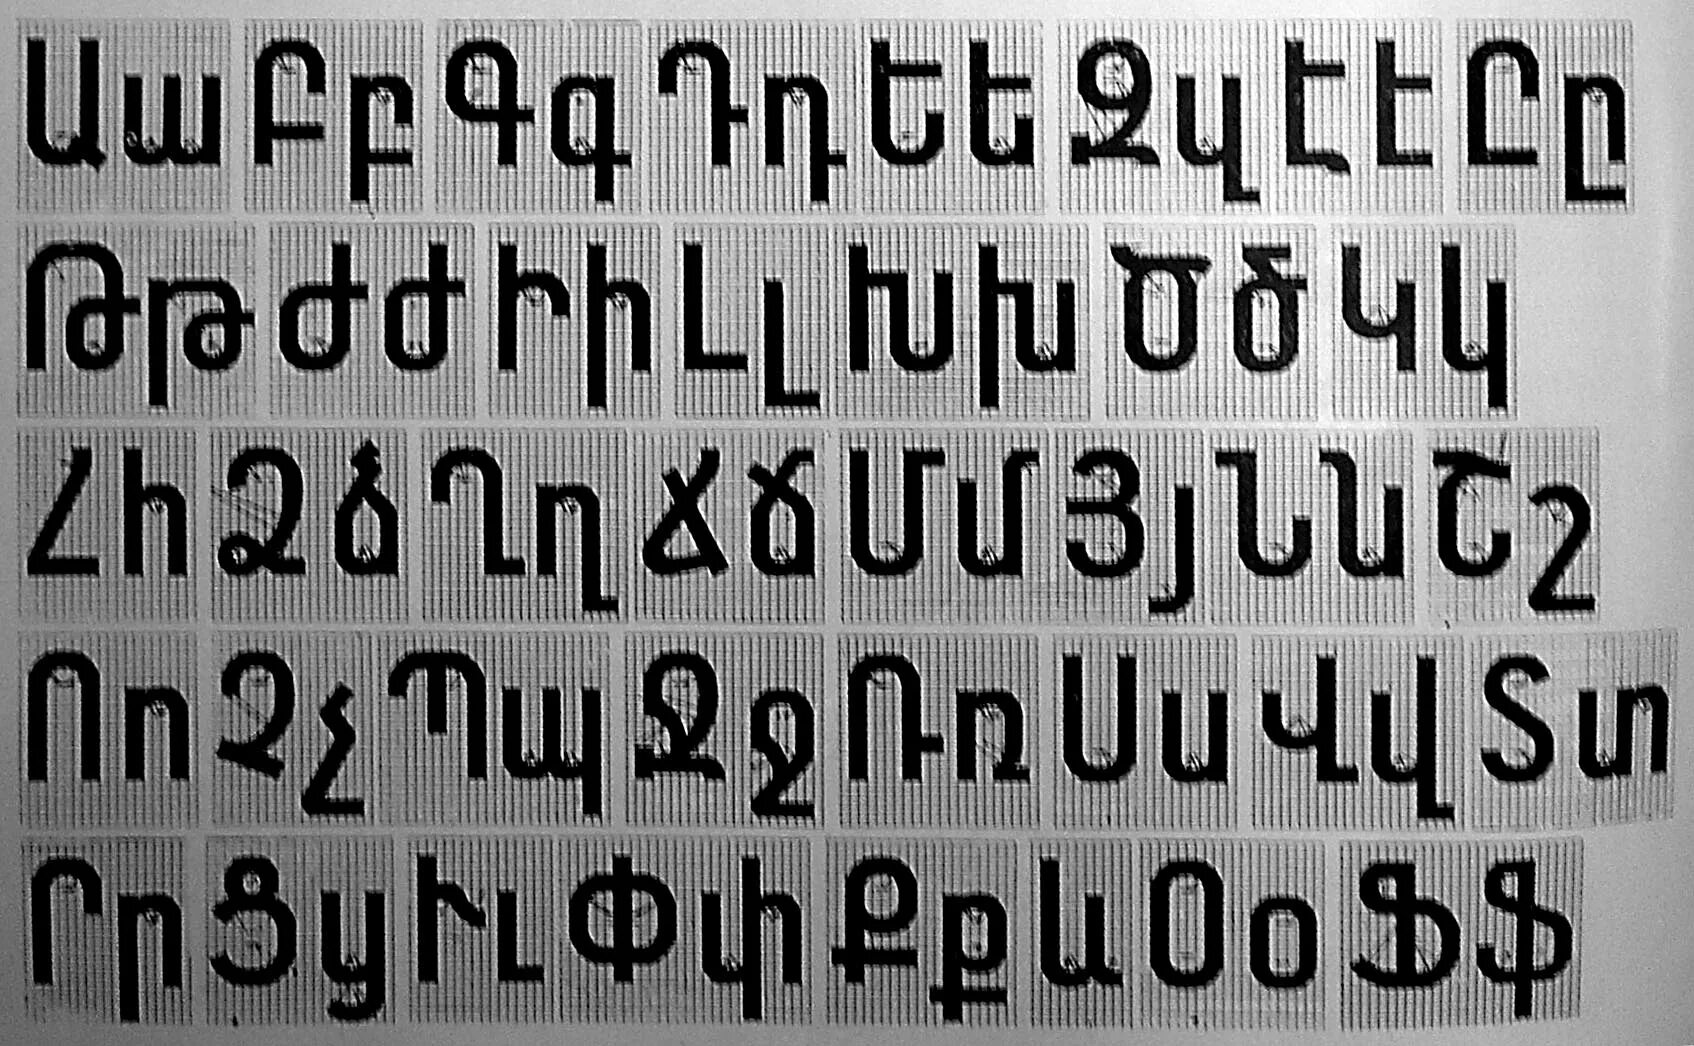 Шрифт для инстаграмов. Армянский шрифт. Армянский алфавит. Армянский алфавит шрифты. Печатные армянские буквы.